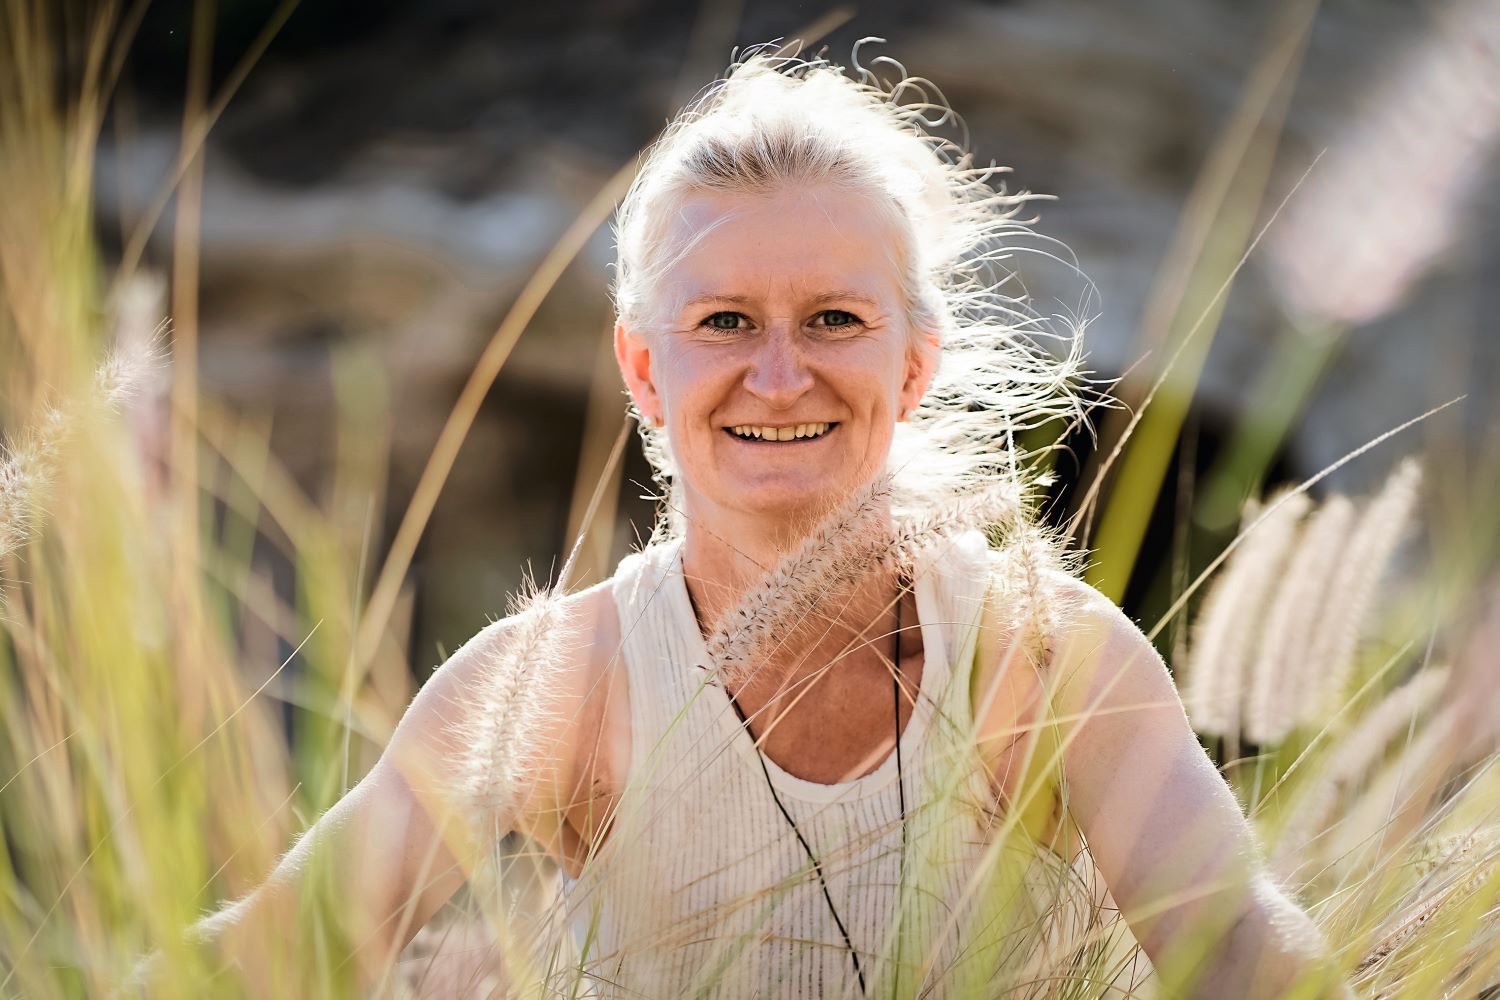 Reiseverkäuferin und Yoga-Expertin Jana Giebe engagiert sich auch für das Thema Nachhaltigkeit